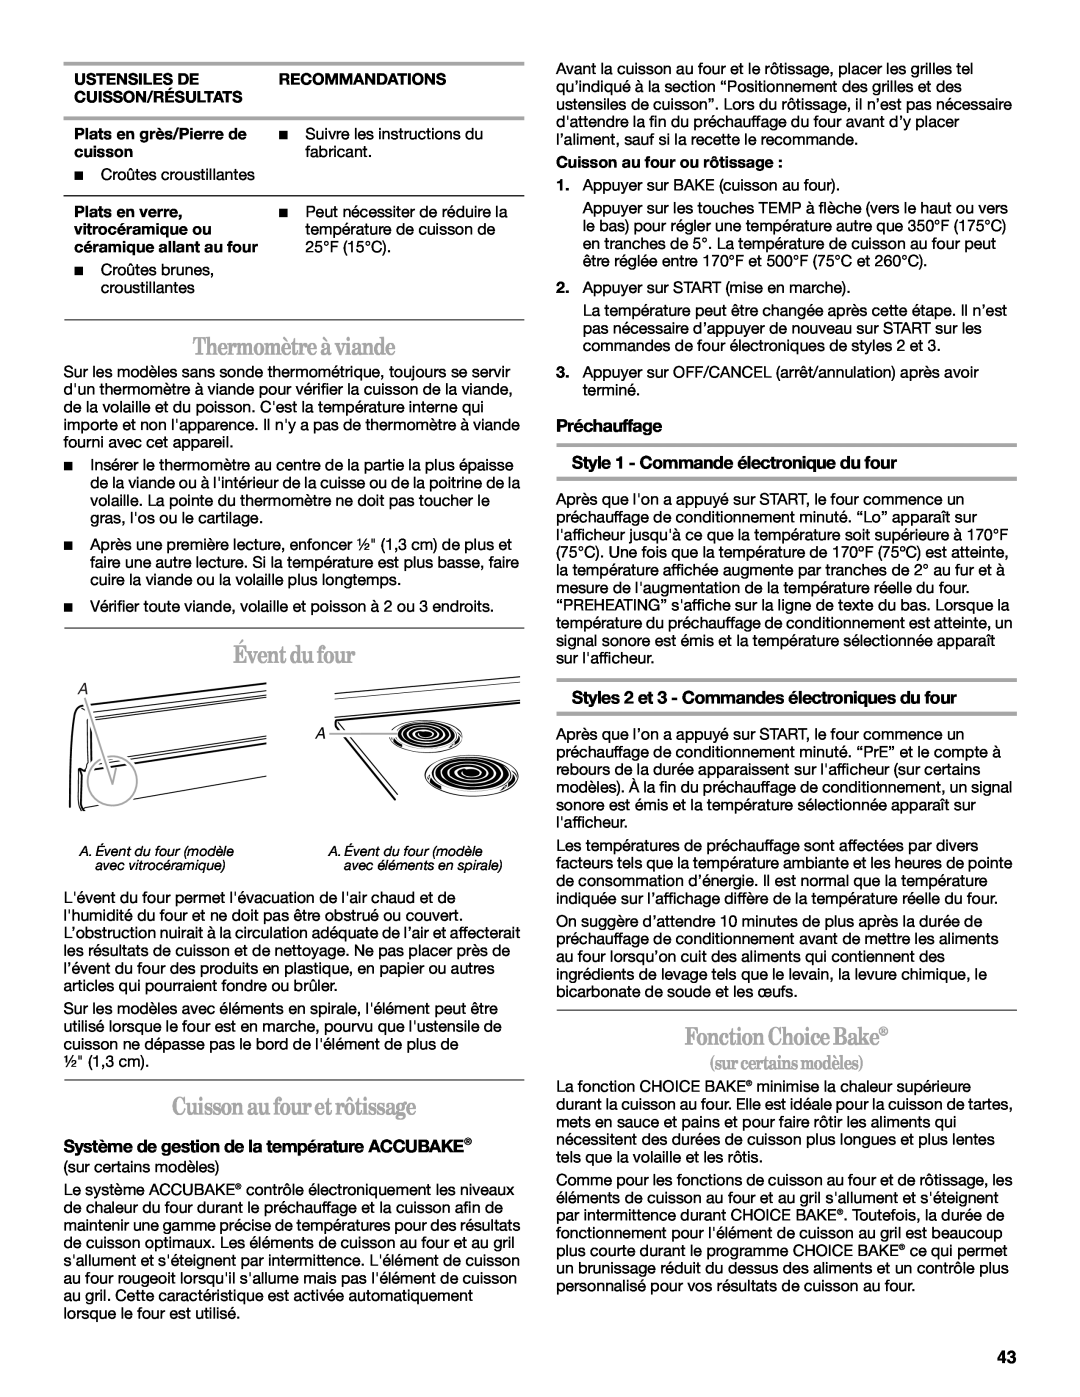 Whirlpool GERC4110PB2 manual Thermomètre à viande, Évent du four, Cuisson au four et rôtissage, Fonction Choice Bake 